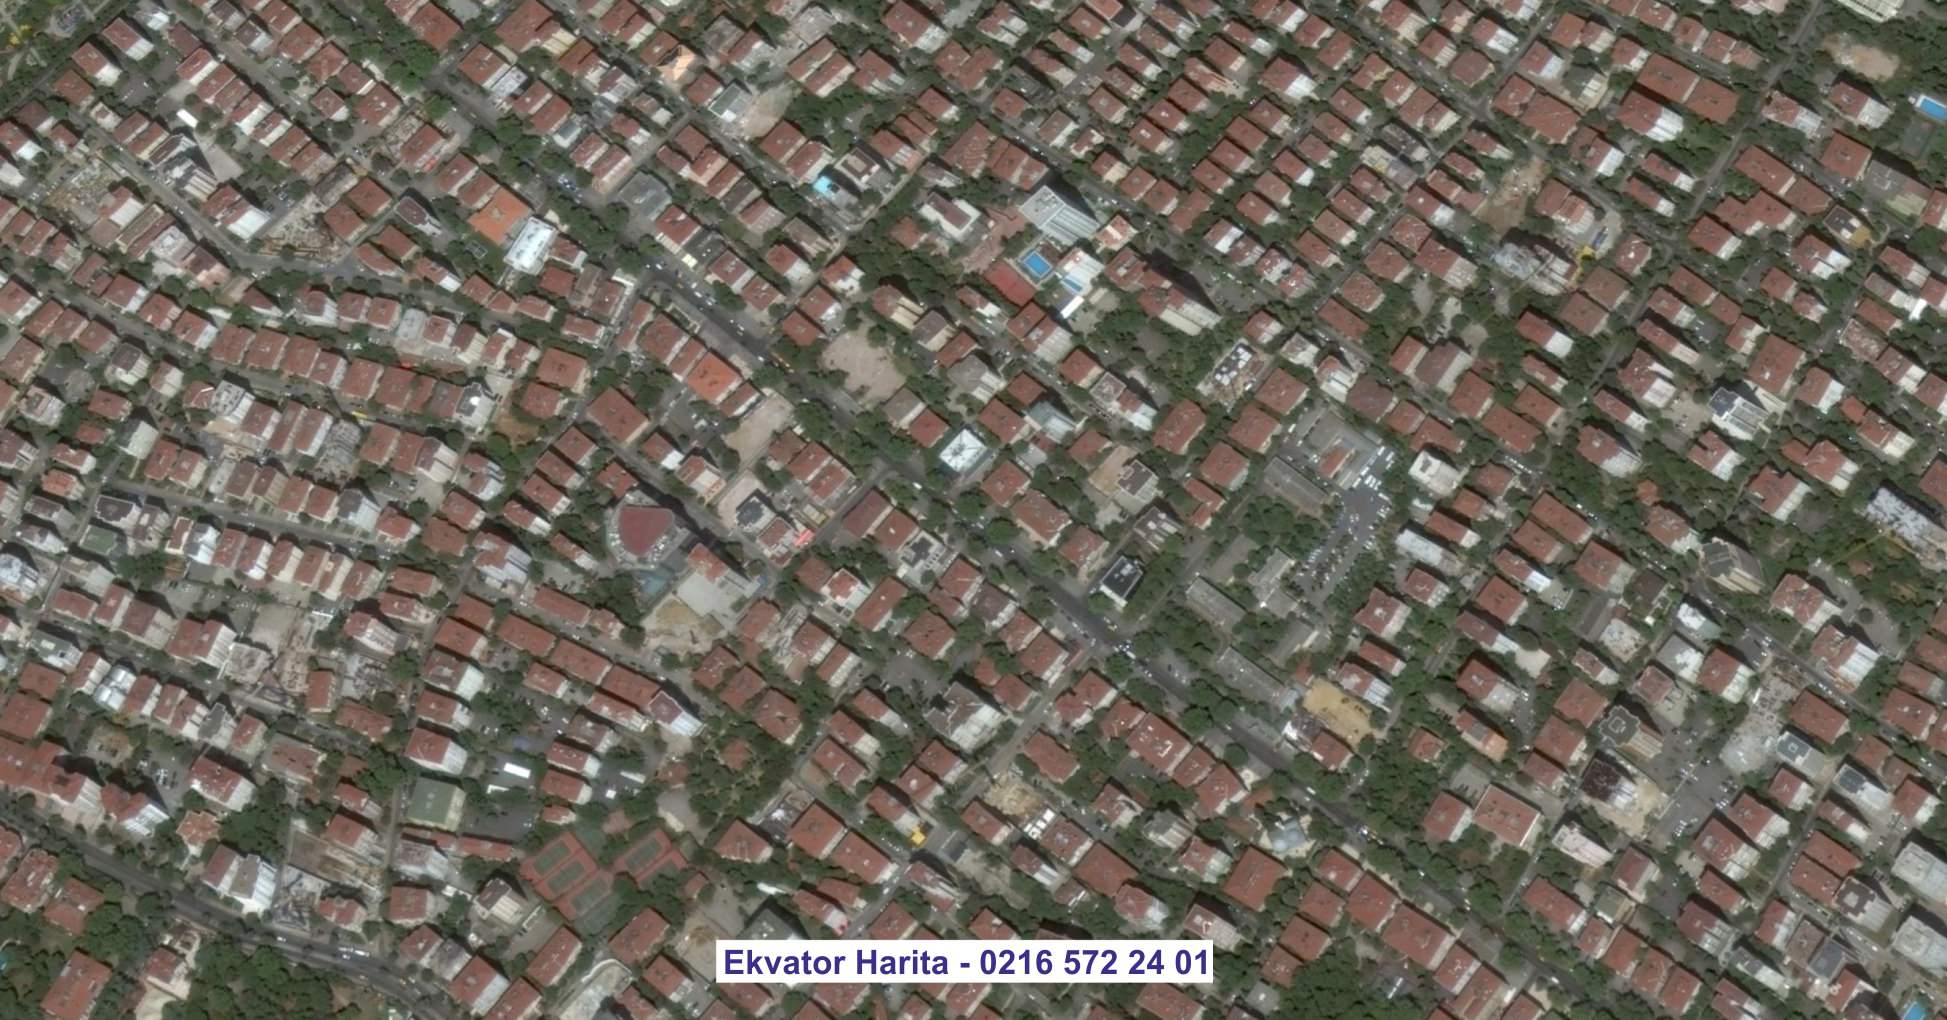 Çankaya Uydu Görüntüsü Örnek Fotoğrafı